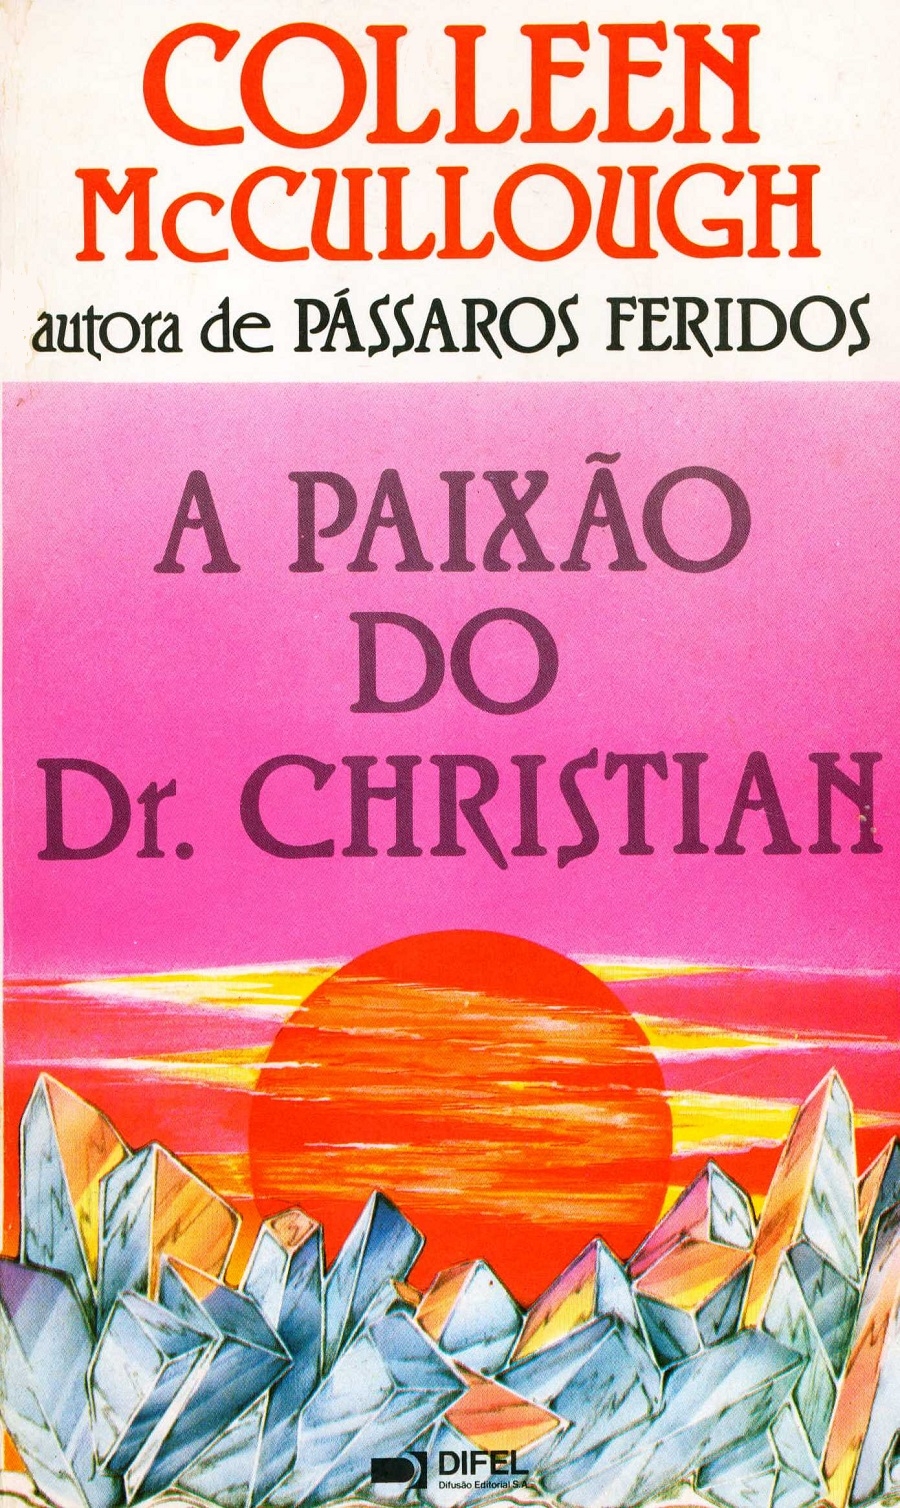 A paixão do Dr. Christian